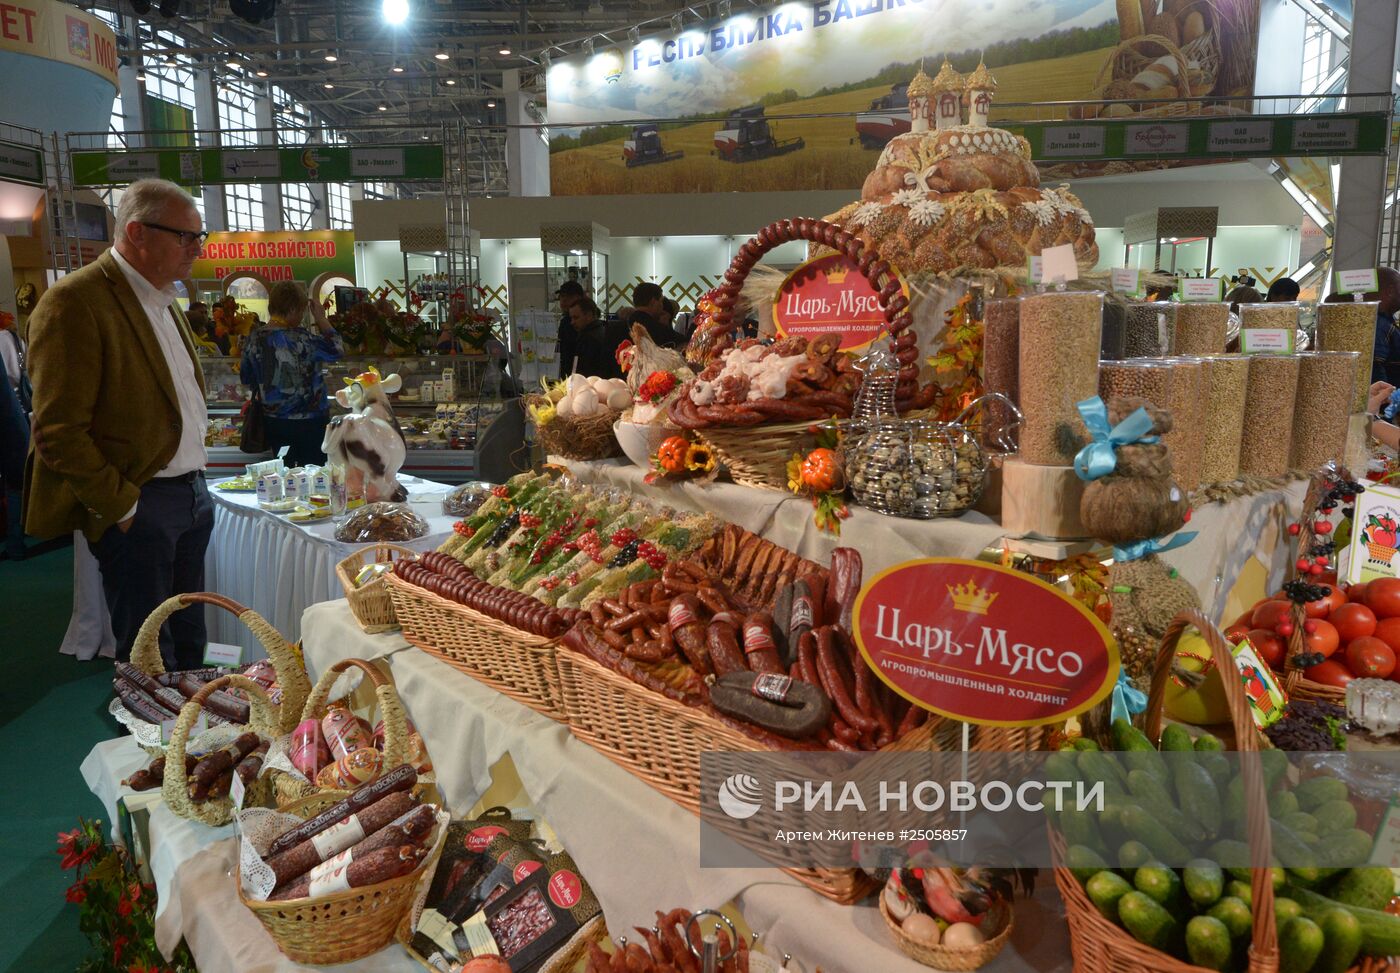 XVI Российская агропромышленная выставка "Золотая осень-2014"